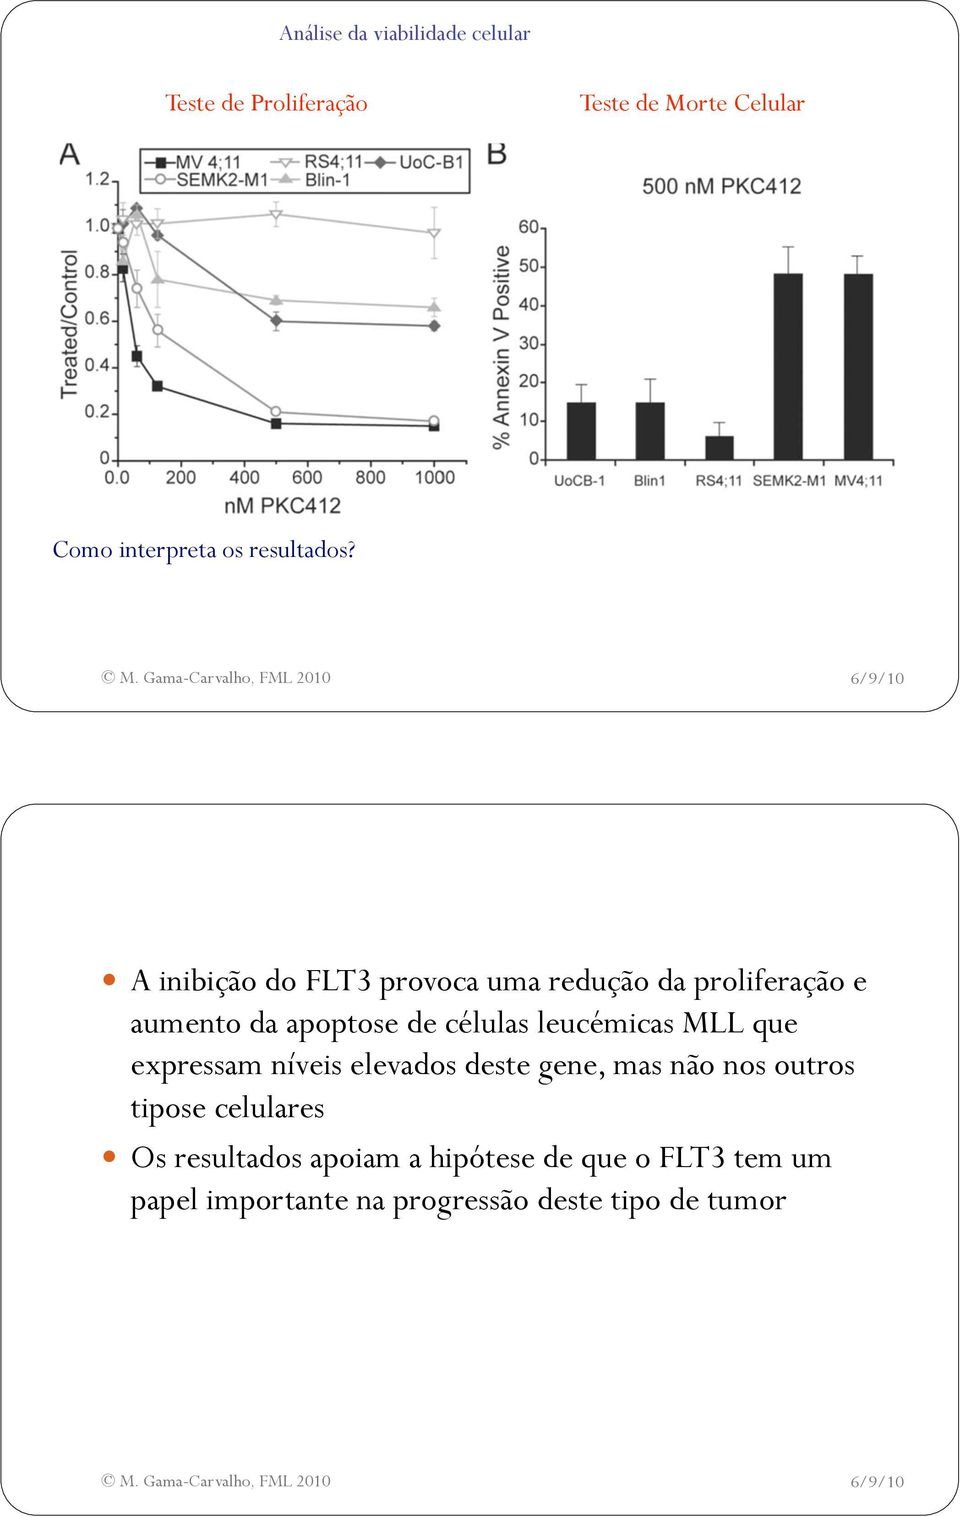 A inibição do FLT3 provoca uma redução da proliferação e aumento da apoptose de células